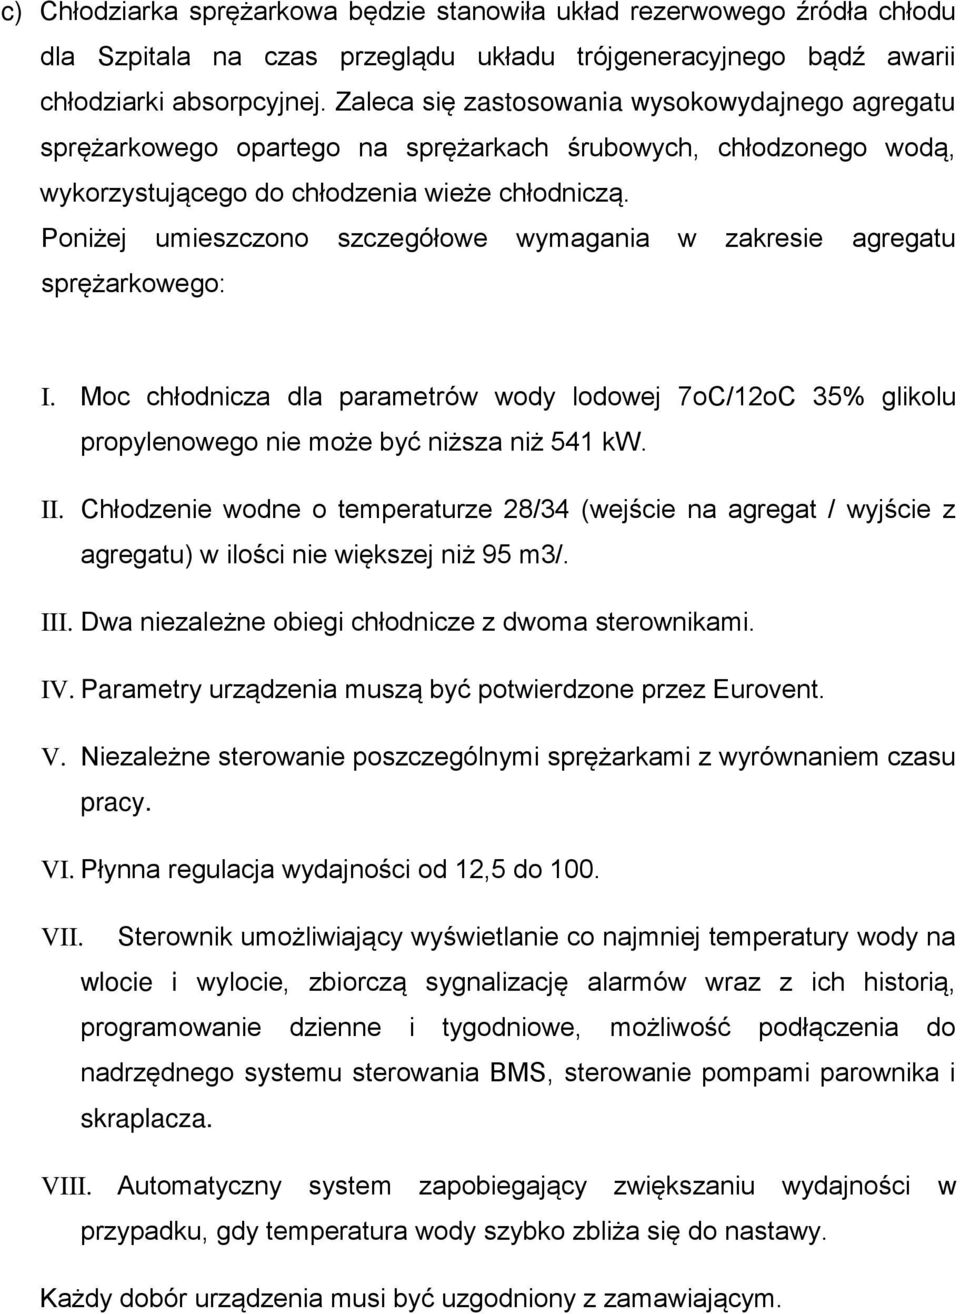 Poniżej umieszczono szczegółowe wymagania w zakresie agregatu sprężarkowego: I. Moc chłodnicza dla parametrów wody lodowej 7oC/12oC 35% glikolu propylenowego nie może być niższa niż 541 kw. II.